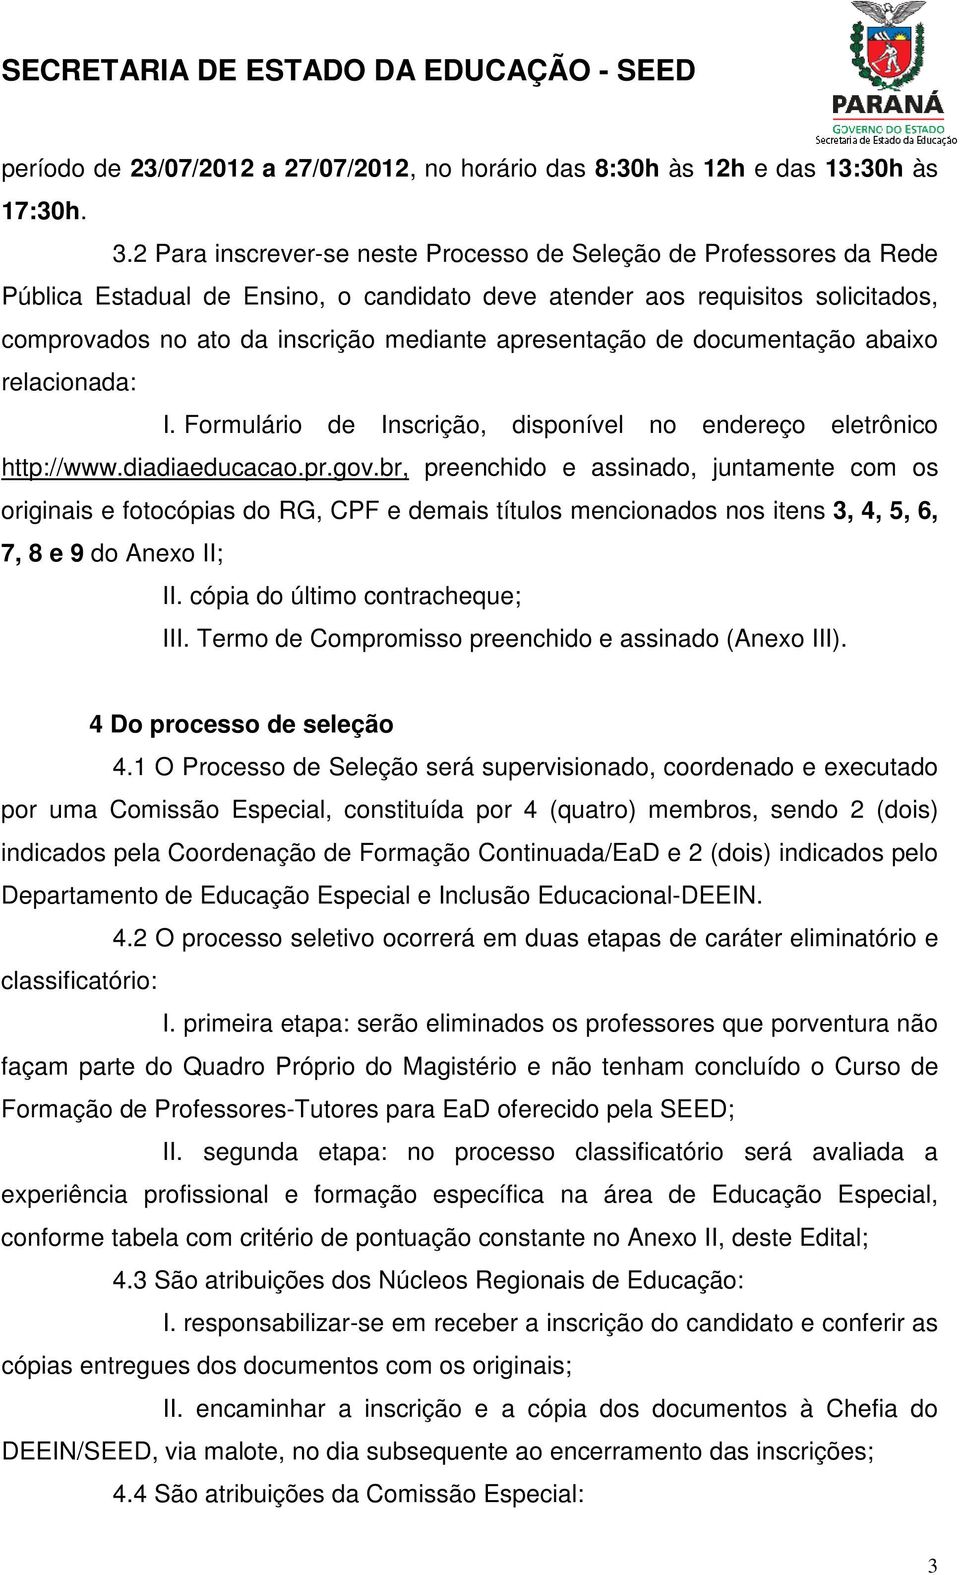 apresentação de documentação abaixo relacionada: I. Formulário de Inscrição, disponível no endereço eletrônico http://www.diadiaeducacao.pr.gov.